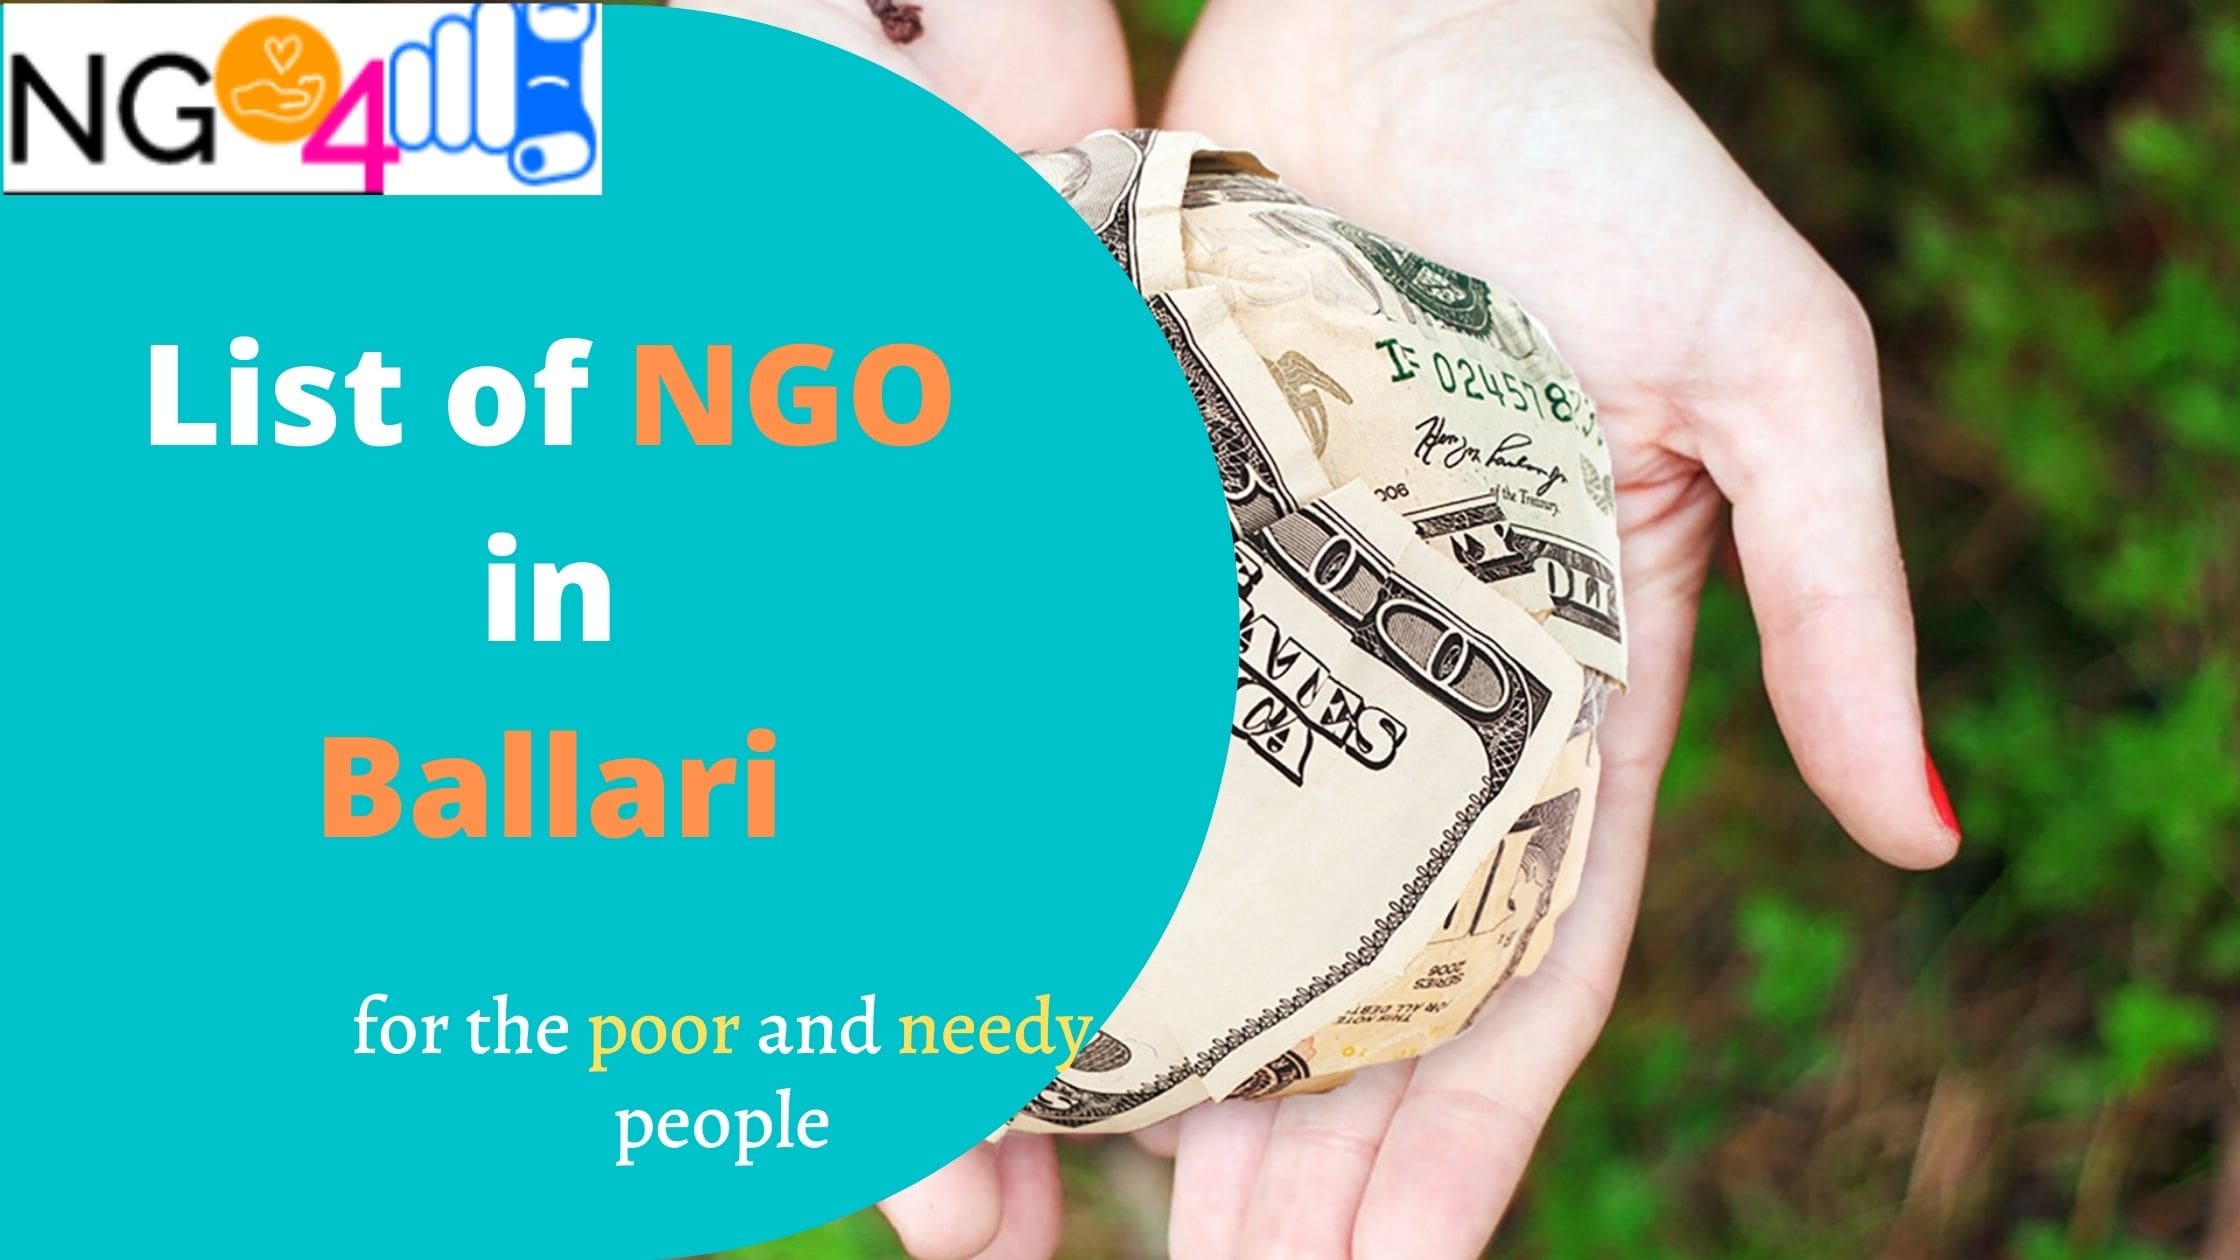 NGOs in Ballari